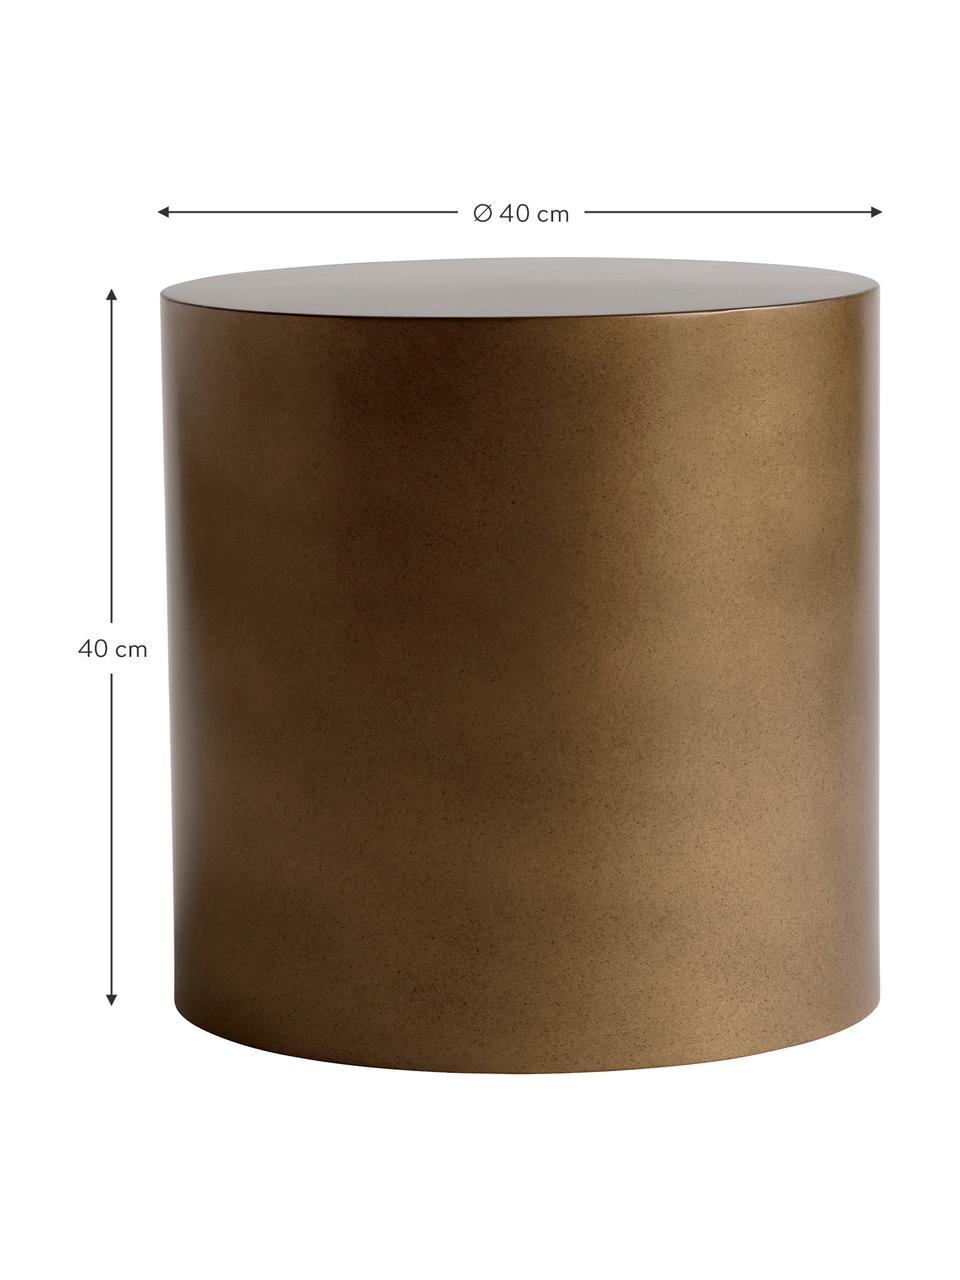 Ronde metalen bijzettafel Metdrum in honingkleur, Metaal, Honingkleurig, Ø 40 x H 40 cm